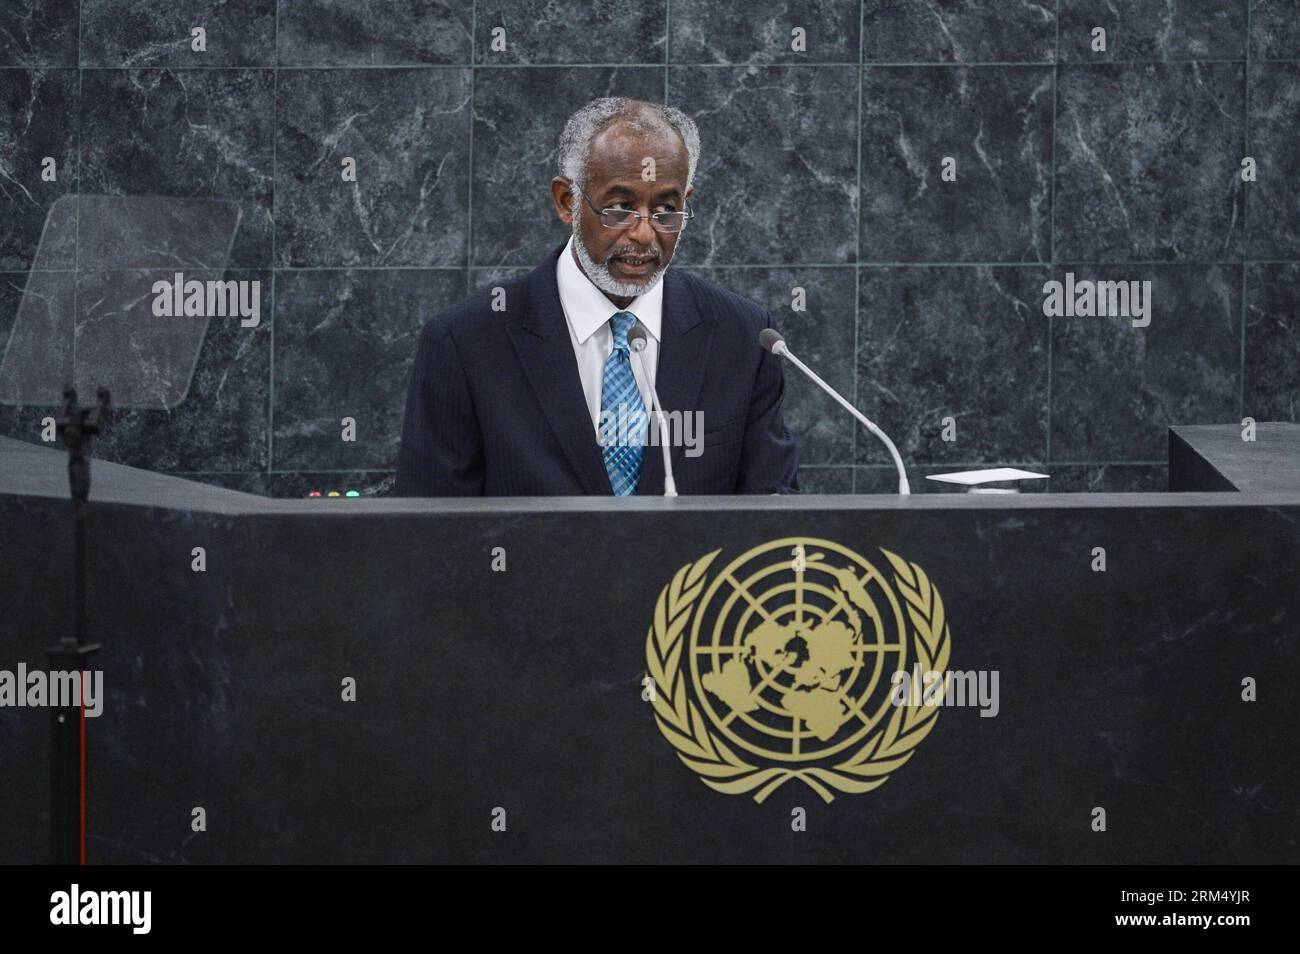 Bildnummer: 60536925 Datum: 27.09.2013 Copyright: imago/Xinhua (130927) -- NEW YORK, Sept. 27, 2013 (Xinhua) -- der sudanesische Außenminister Ali Ahmed Karti spricht während der allgemeinen Aussprache der 68. Tagung der Generalversammlung der Vereinten Nationen am 27. September 2013 im UN-Hauptquartier in New York. (Xinhua/Niu Xiaolei) ALLGEMEINE AUSSPRACHE DER GENERALVERSAMMLUNG der Vereinten Nationen PUBLICATIONxNOTxINxCHN Politik People UN Vollversammlung xas x0x 2013 quer premiumd 60536925 Datum 27 09 2013 Copyright Imago XINHUA New York Sept 27 2013 XINHUA Sudan S Außenminister Ali Ahmed Karting spricht während der General Deba Stockfoto